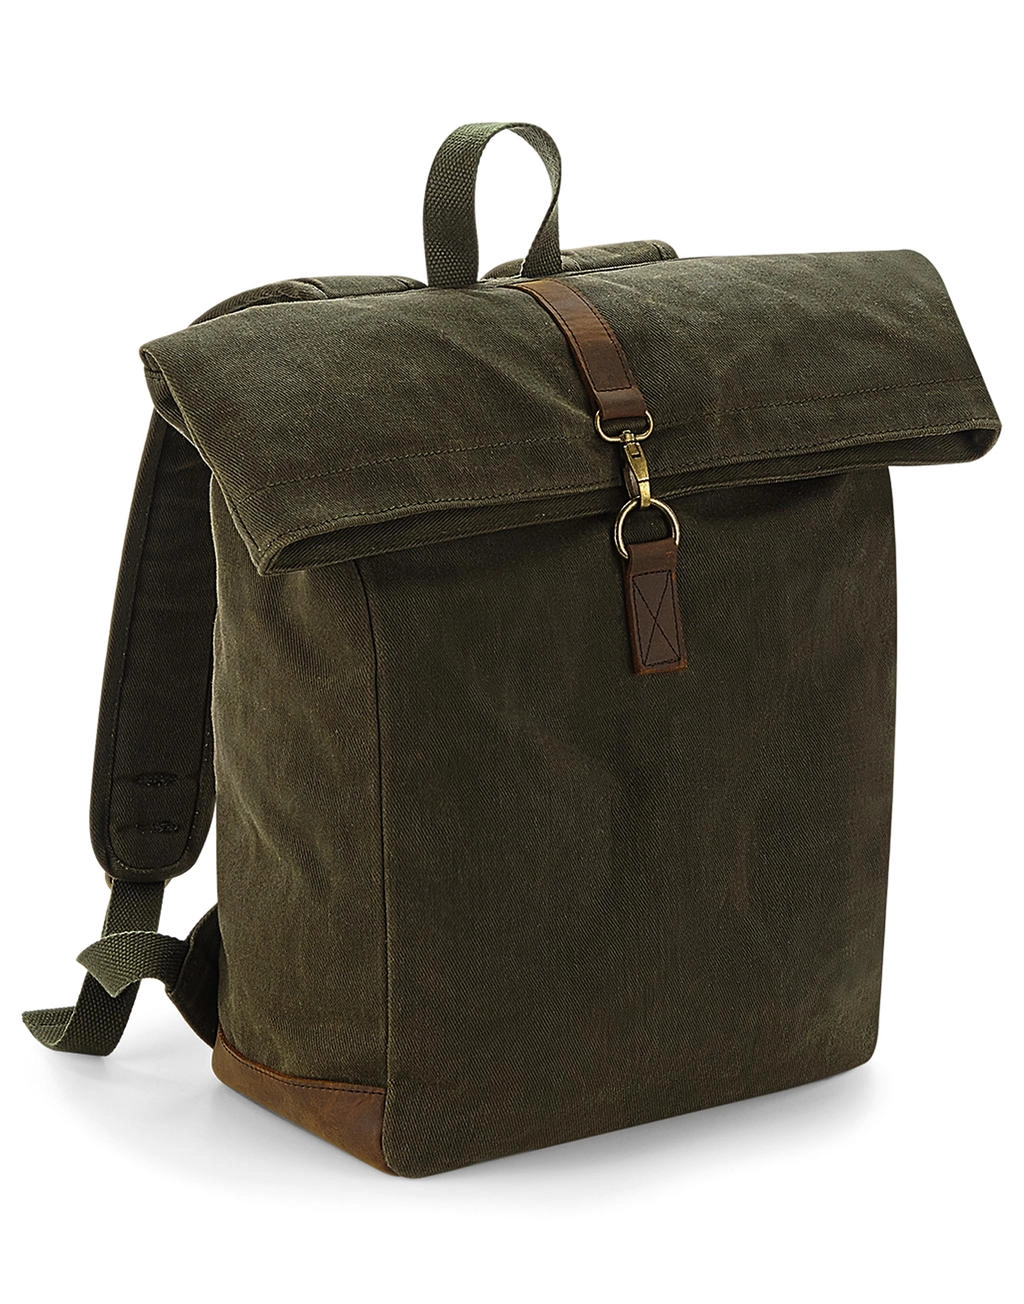 Heritage Waxed Canvas Backpack zum Besticken und Bedrucken mit Ihren Logo, Schriftzug oder Motiv.